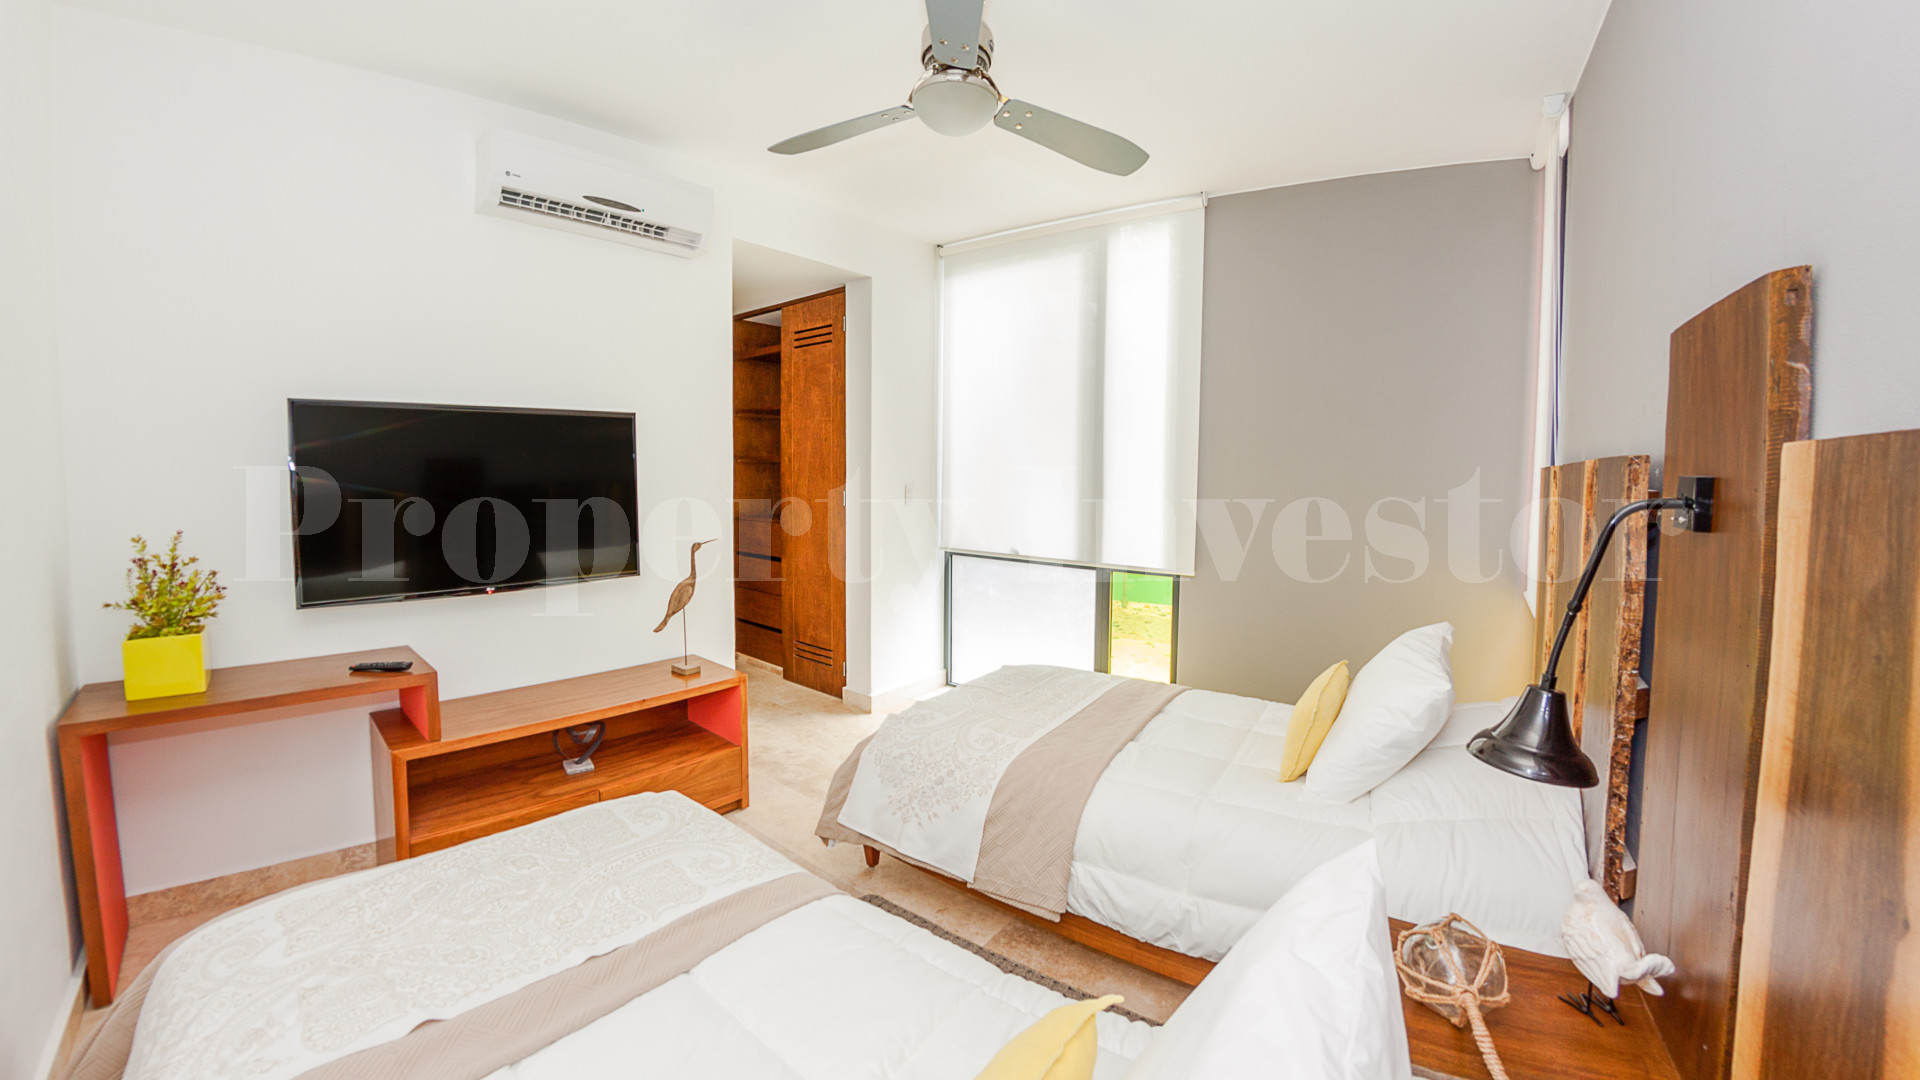 2 Bedroom Boutique Apartment in Tulum (Unit 101)